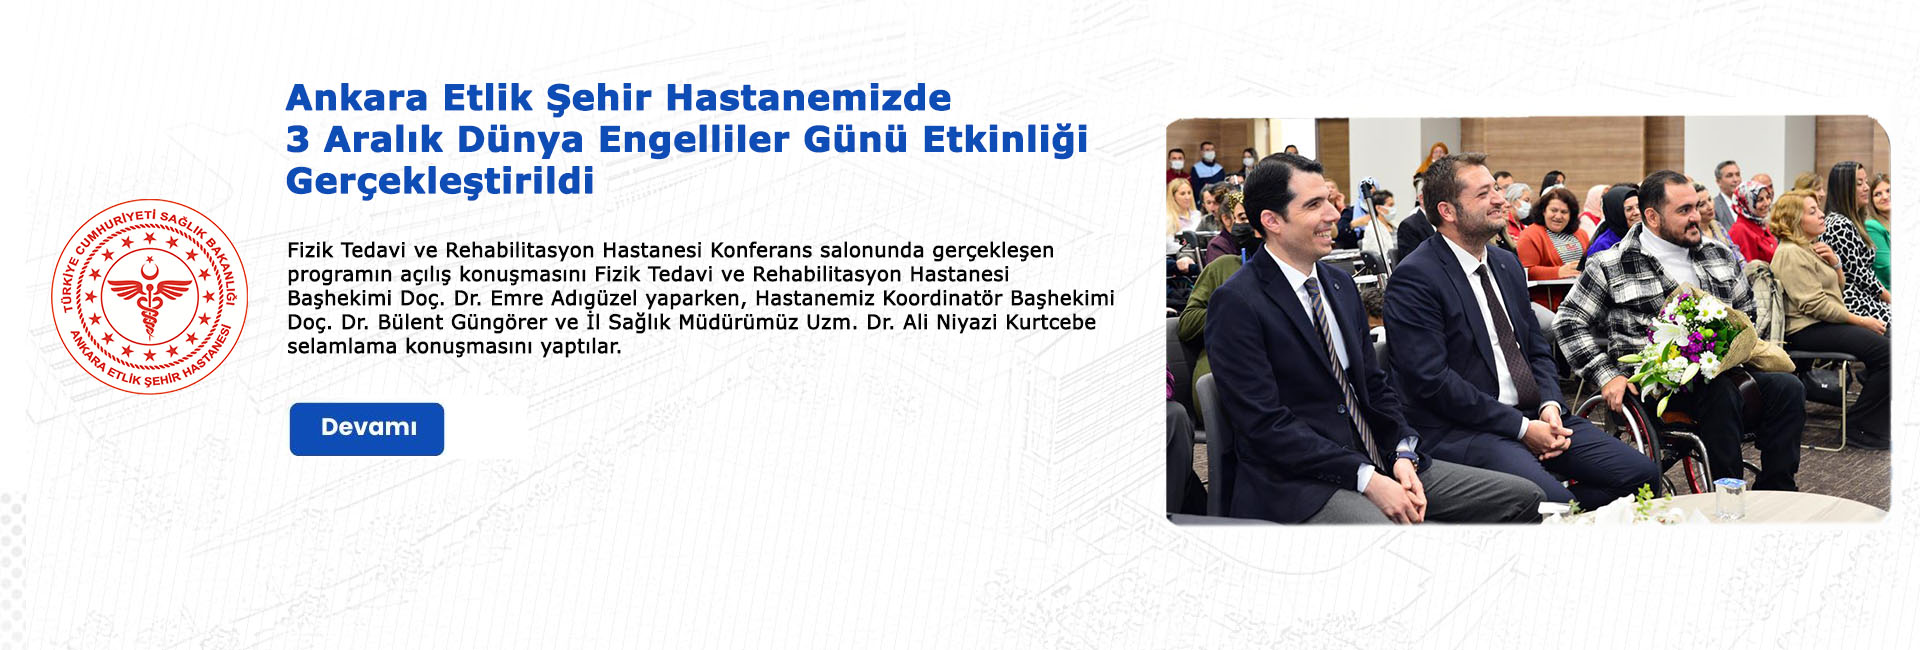 Ankara Etlik Şehir Hastanemizde 3 Aralık Dünya Engelliler Günü etkinliği gerçekleştirildi.